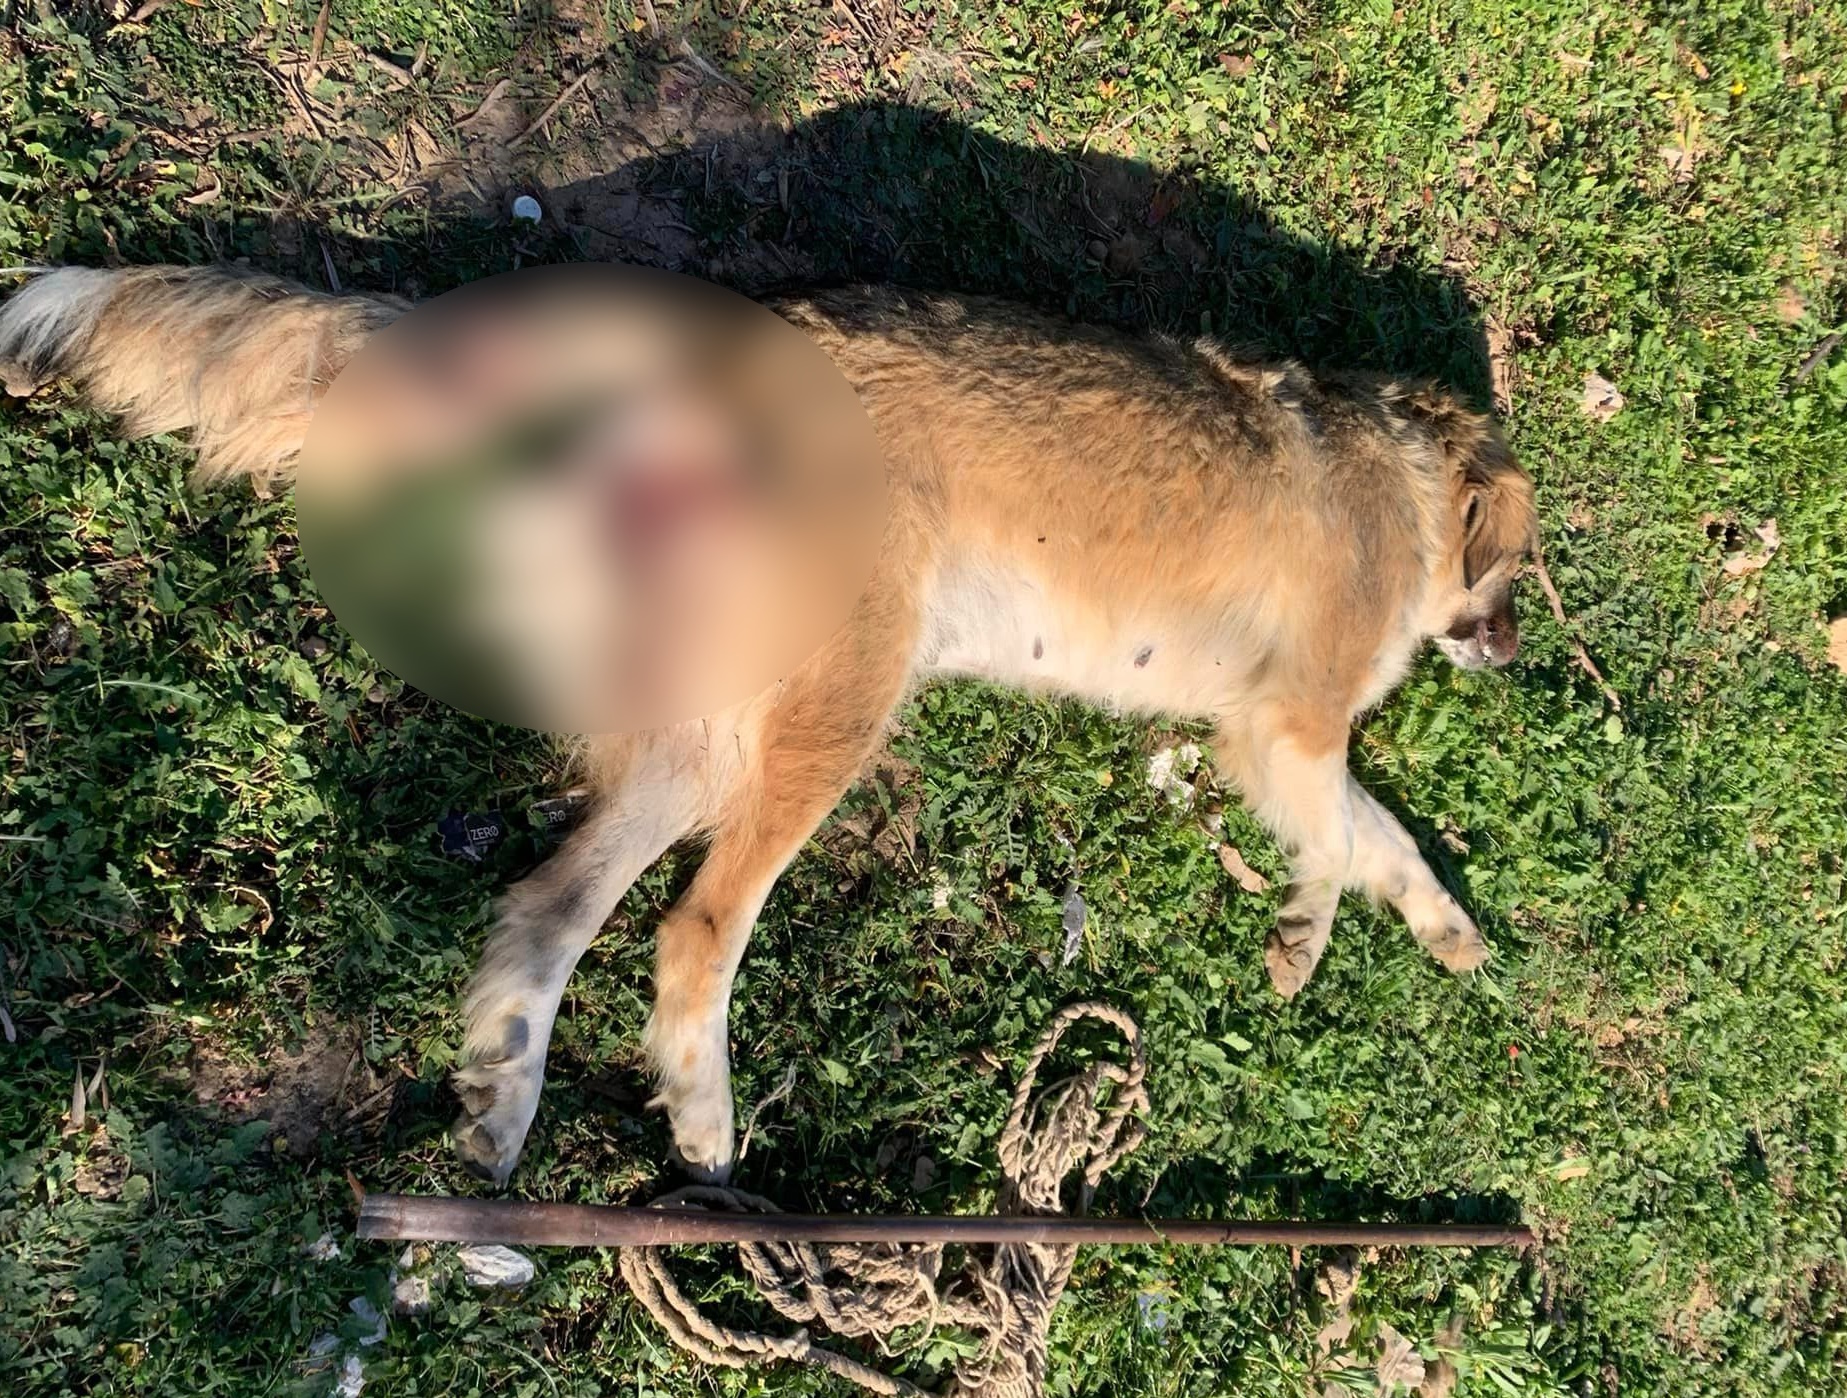 Μέγαρα: Χτύπησαν με αεροβόλο και «παλούκωσαν» σκυλίτσα – Νέα υπόθεση κακοποίησης και δολοφονίας ζώου